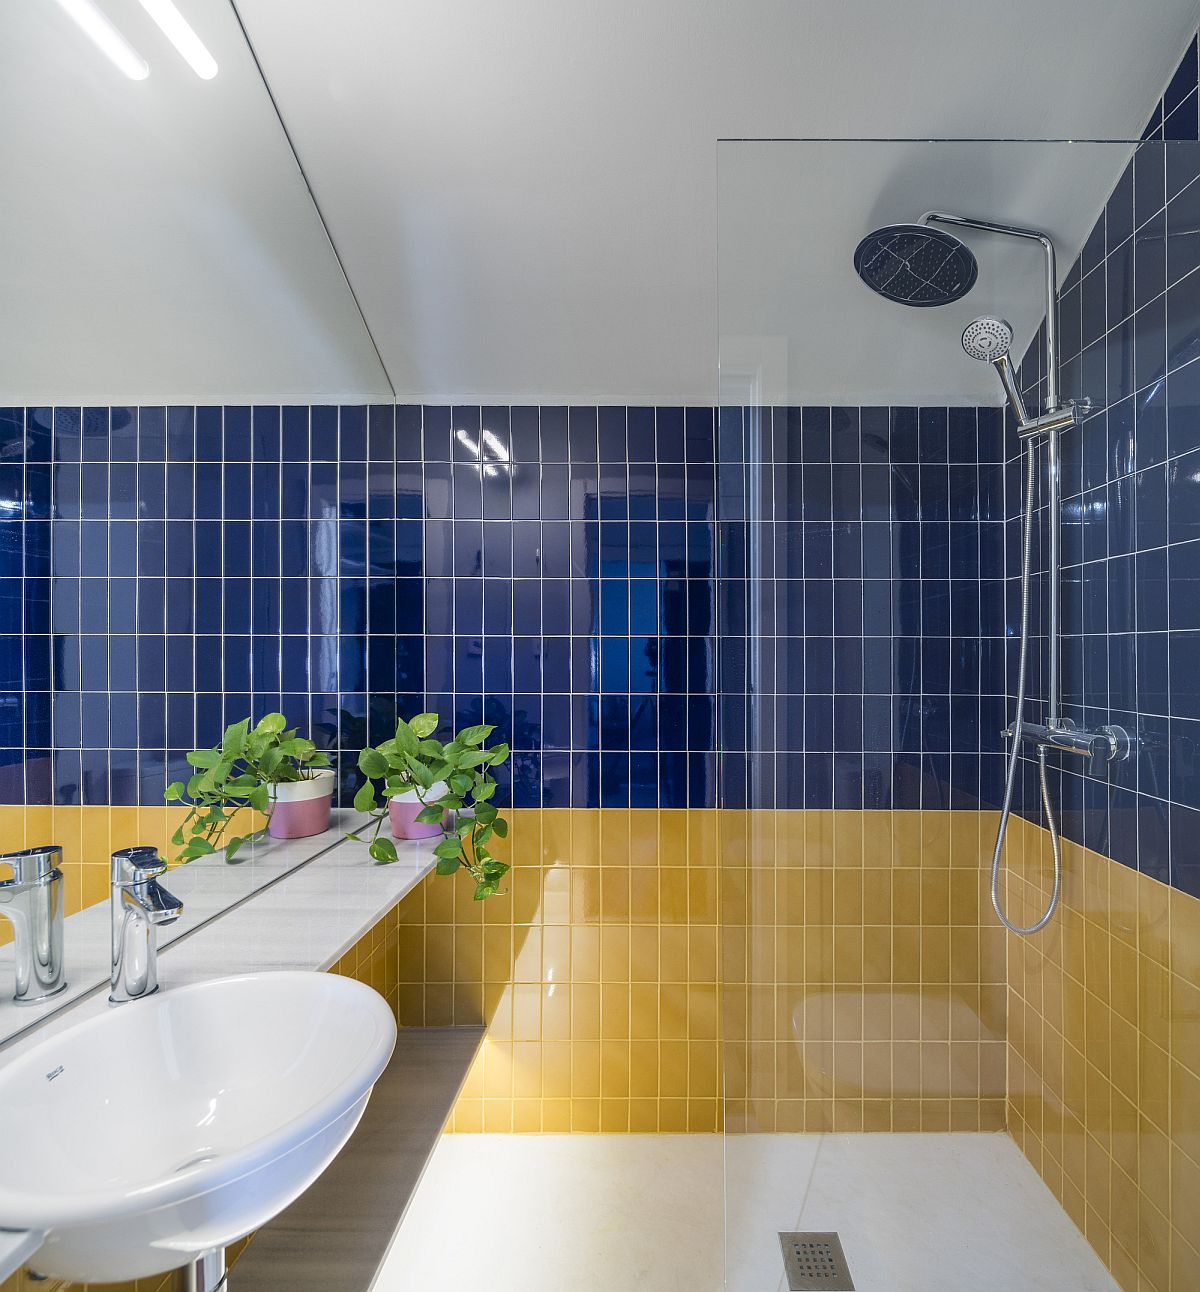 Hình ảnh phòng tắm với tường ốp gạch vàng, xanh, trắng